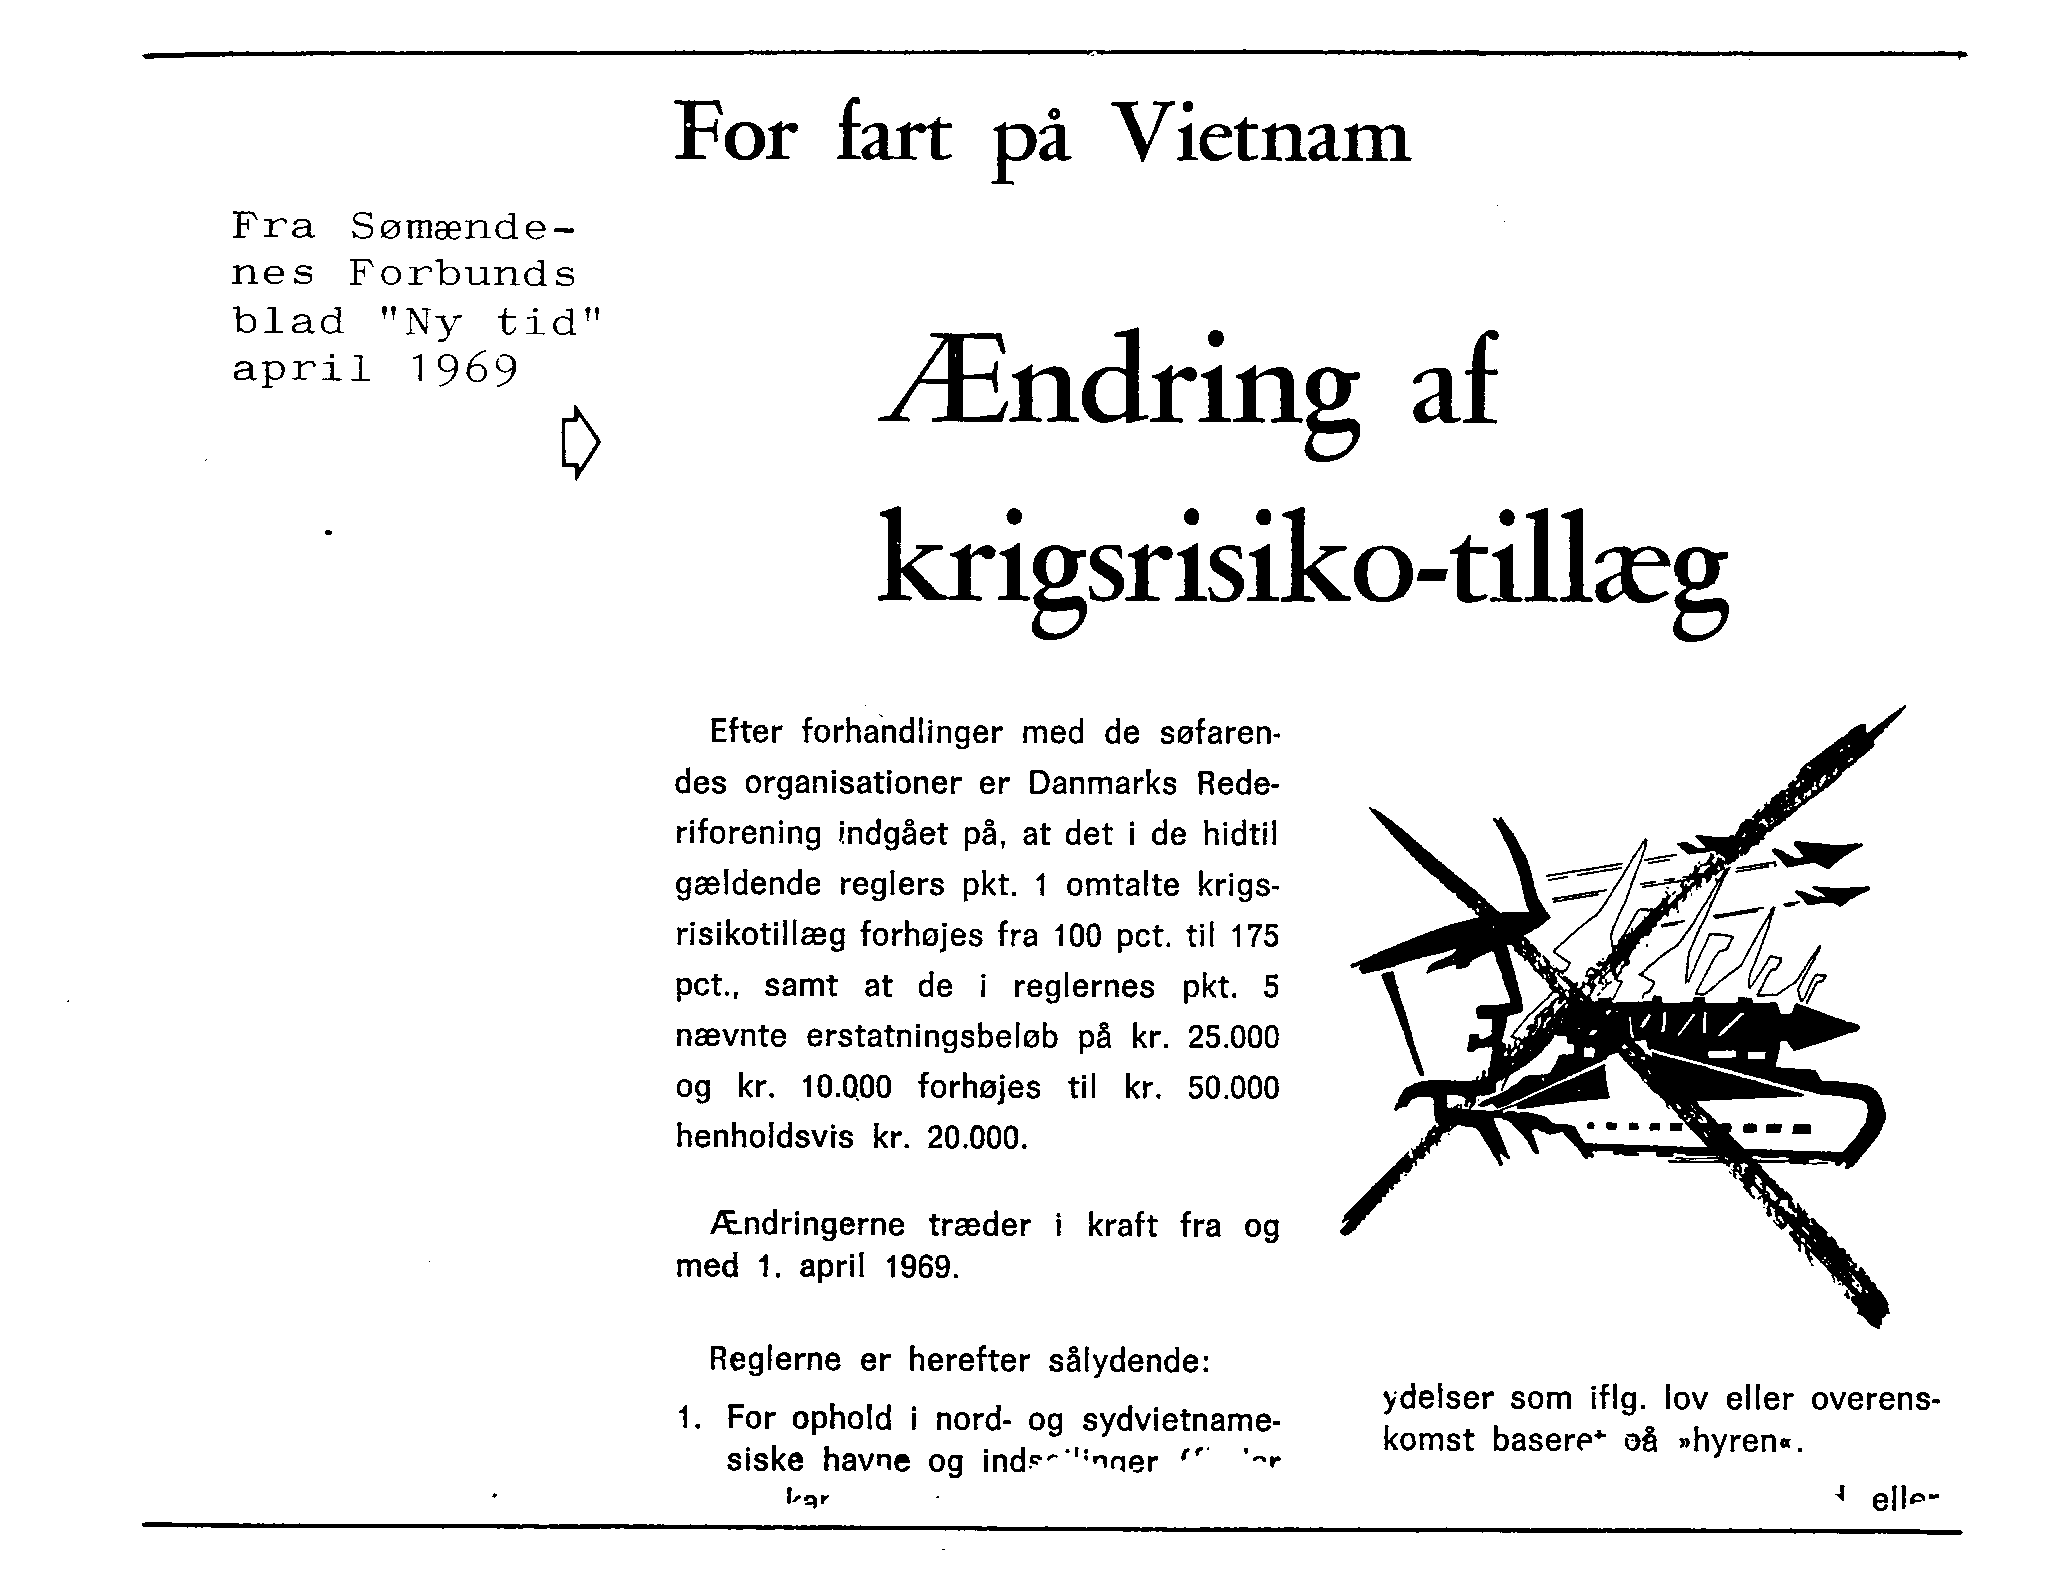 Klip fra Sømændenes Forbunds blad "Ny Tid", april 1969.